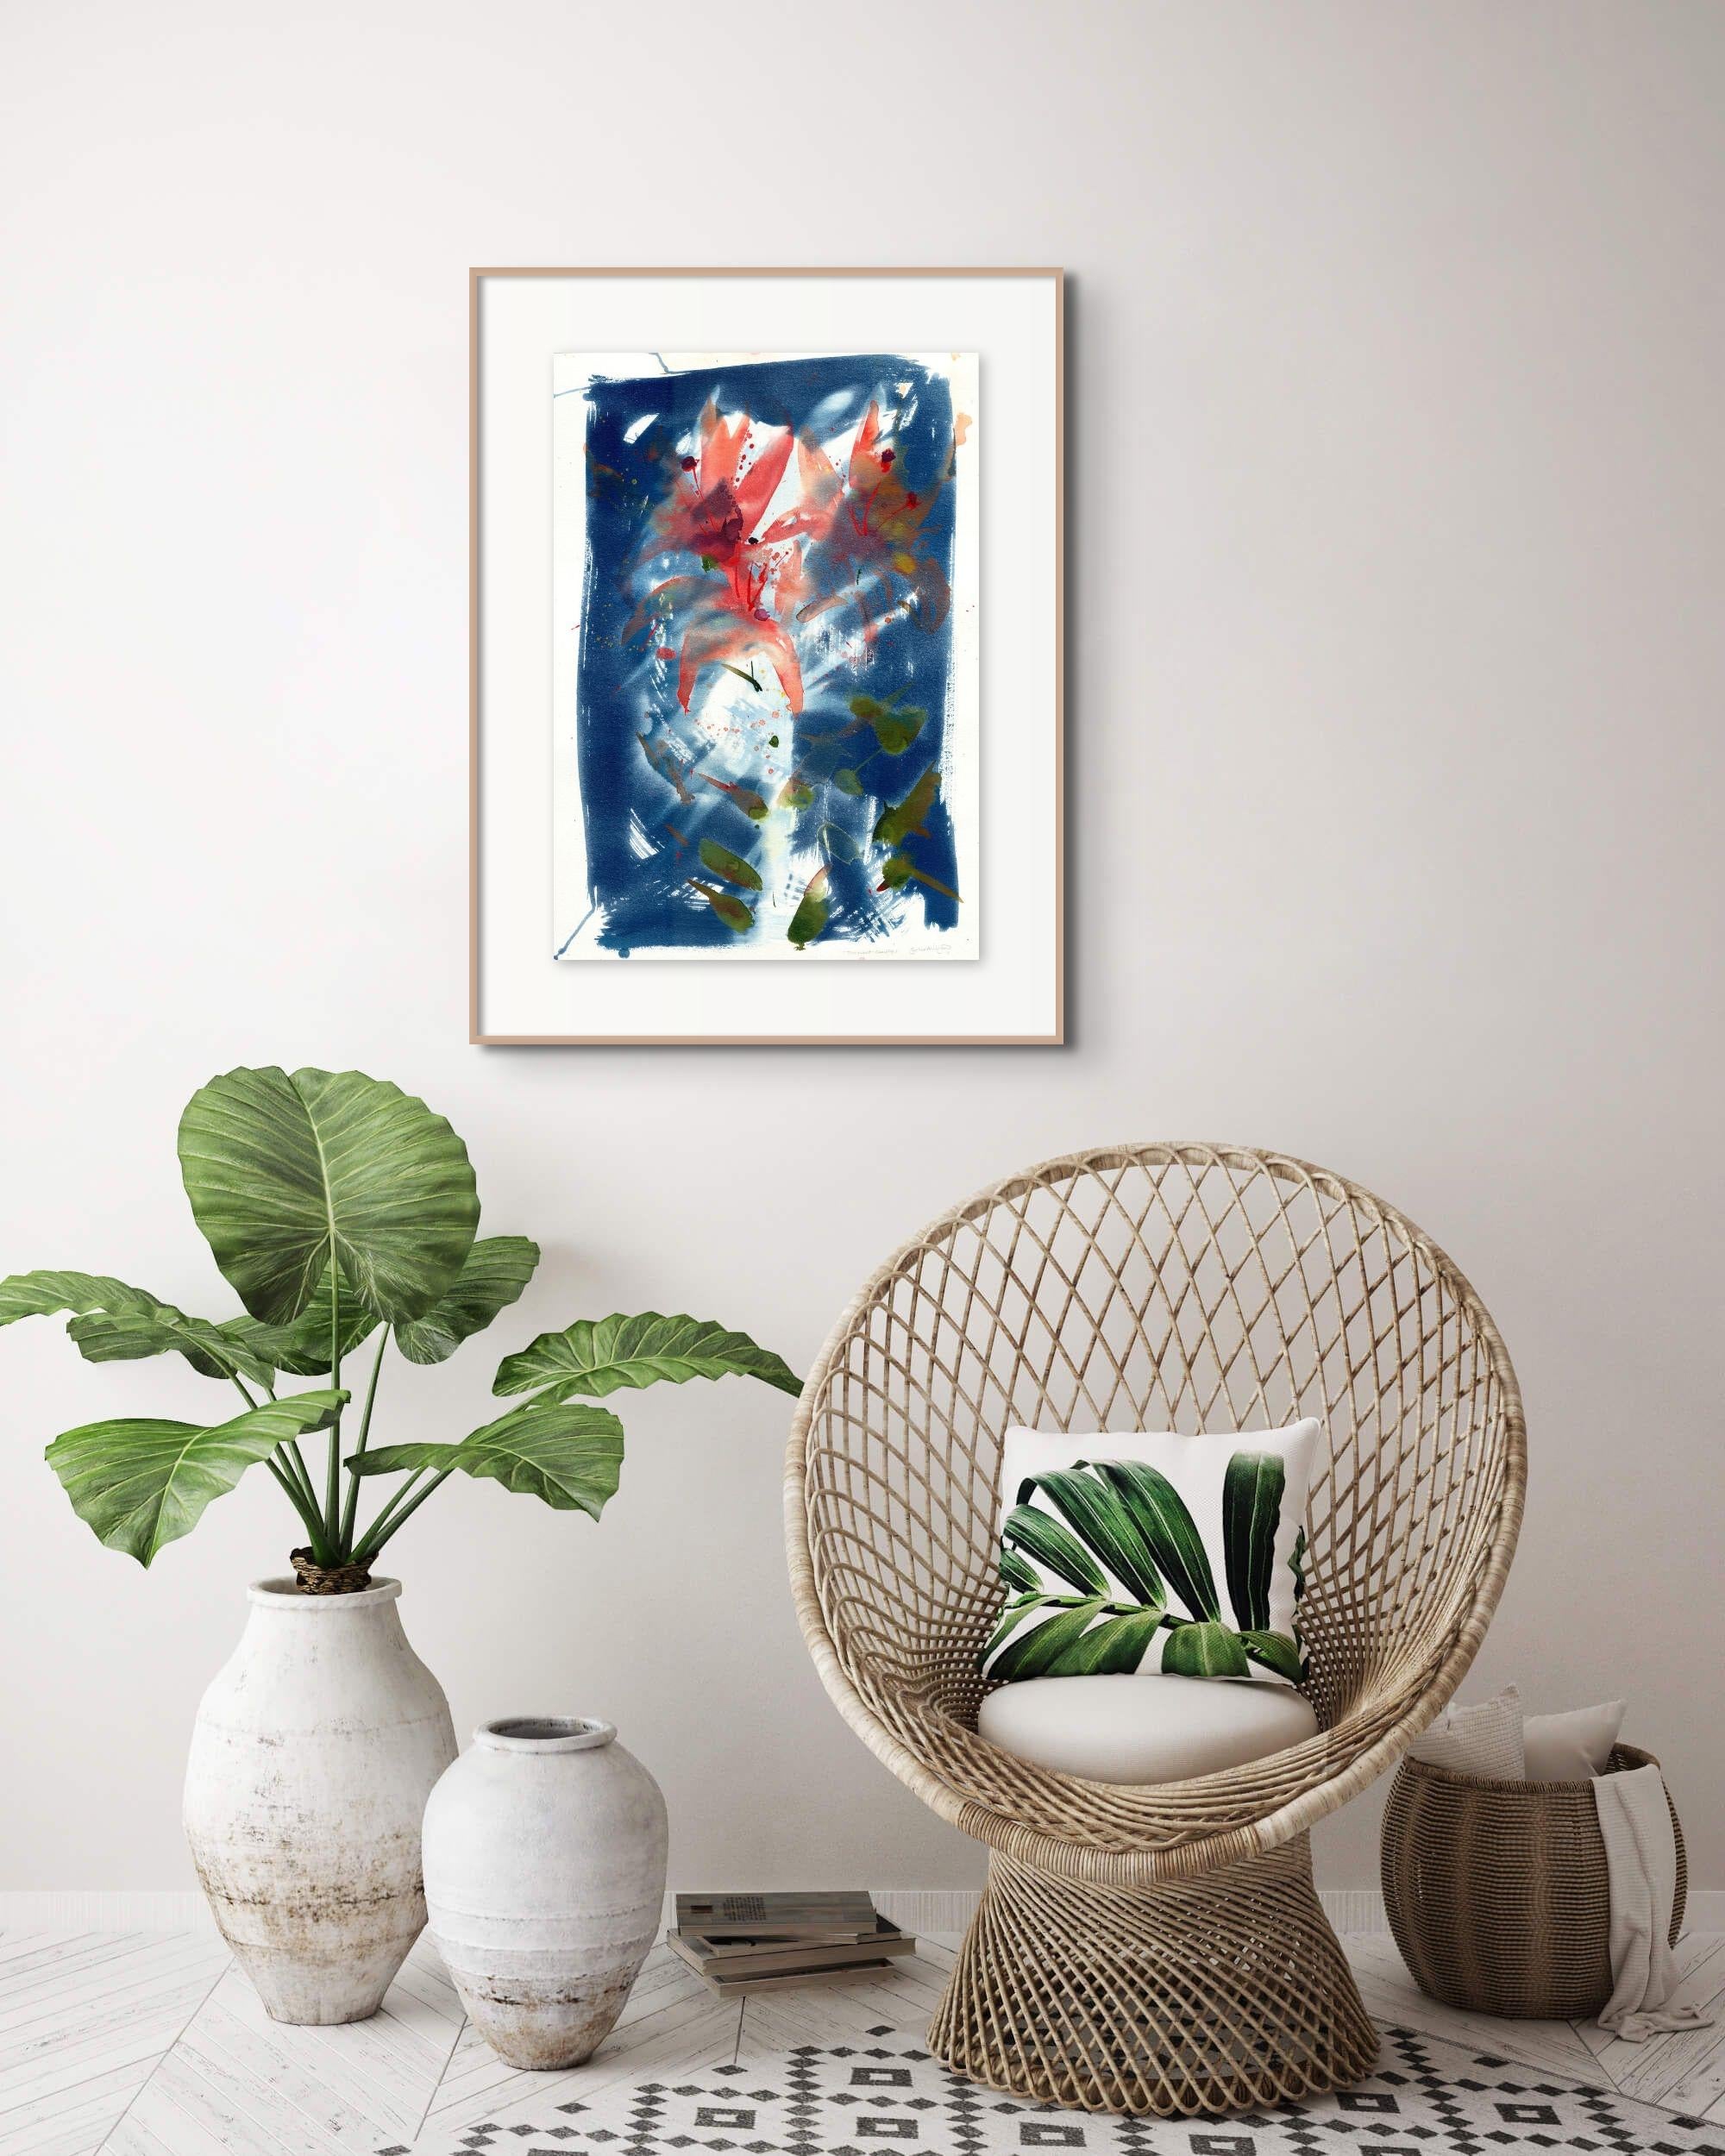 ''Beauté éphémère''. Lily florale abstraite et botanique bleue - Contemporain Mixed Media Art par Sophia Milligan